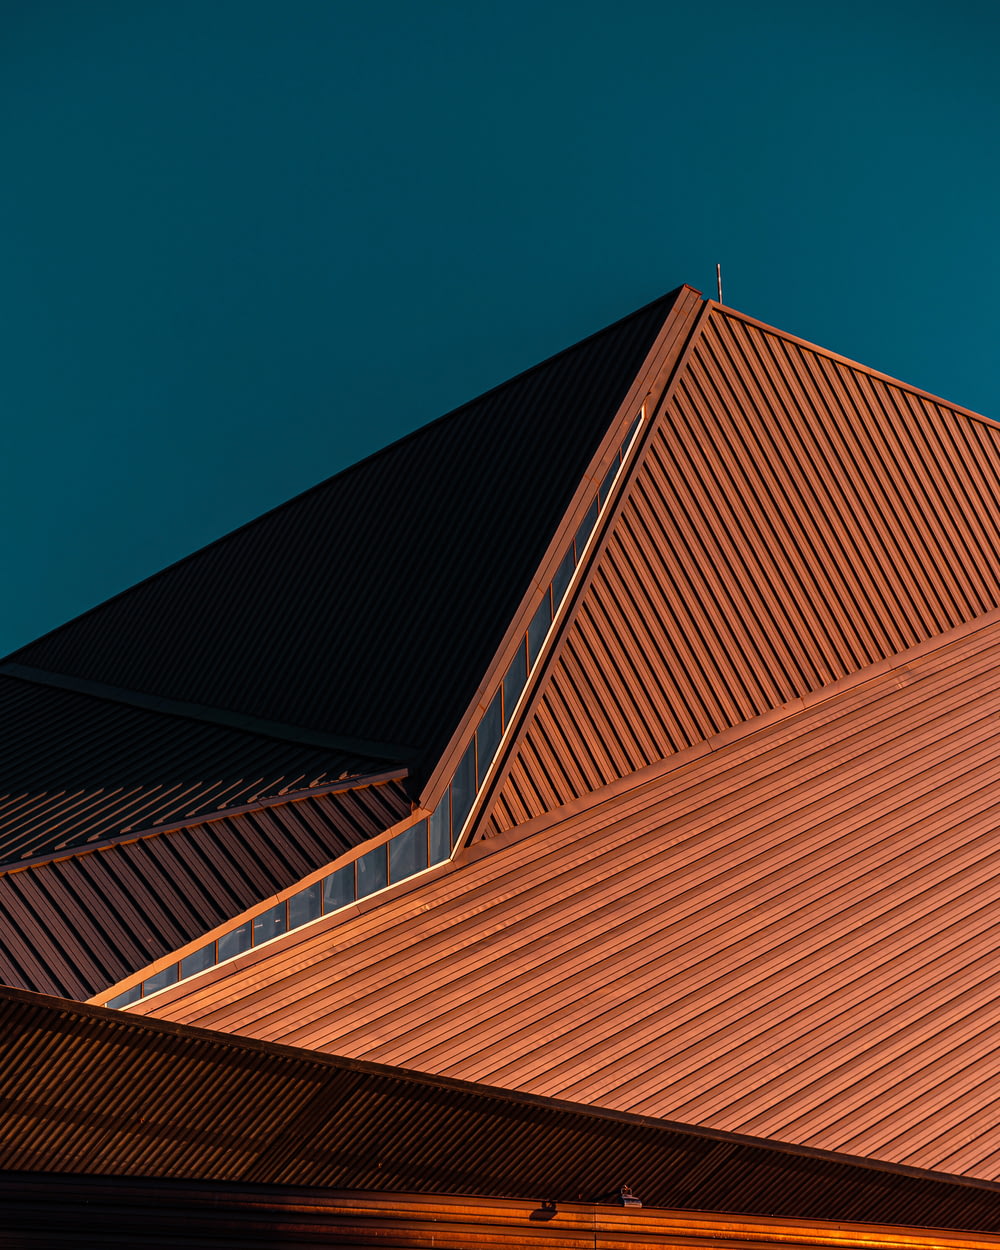 Edificio de hormigón marrón bajo el cielo azul durante el día